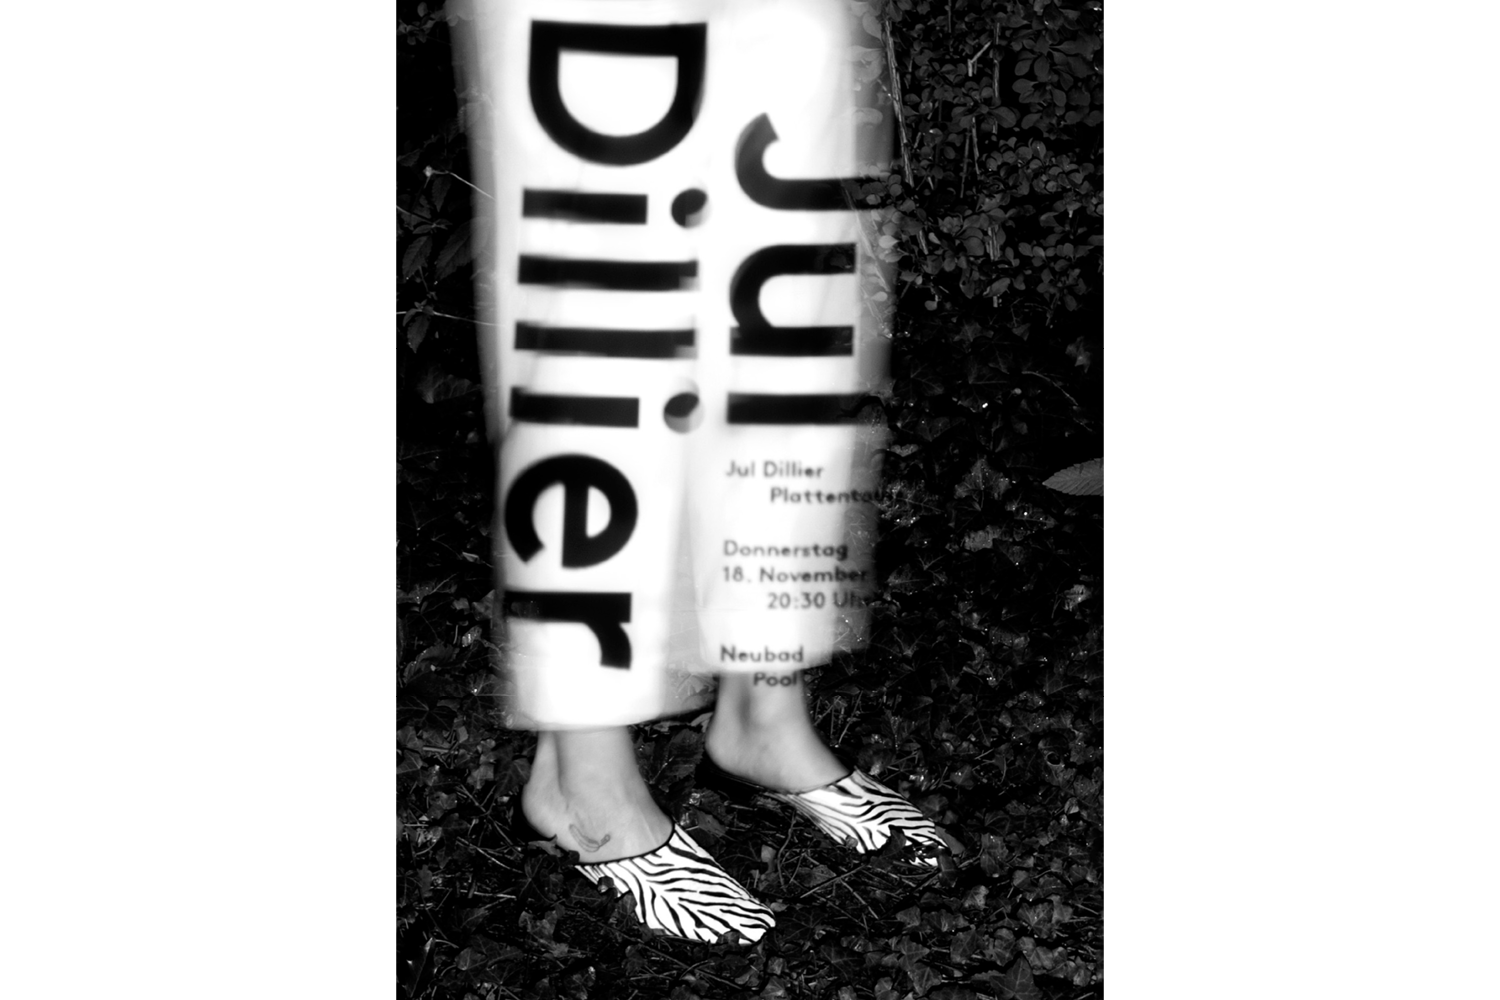 Zwei Beine stehen im Laub, in weisser Hose. Darauf ist der Name Jul Dillier zu lesen.